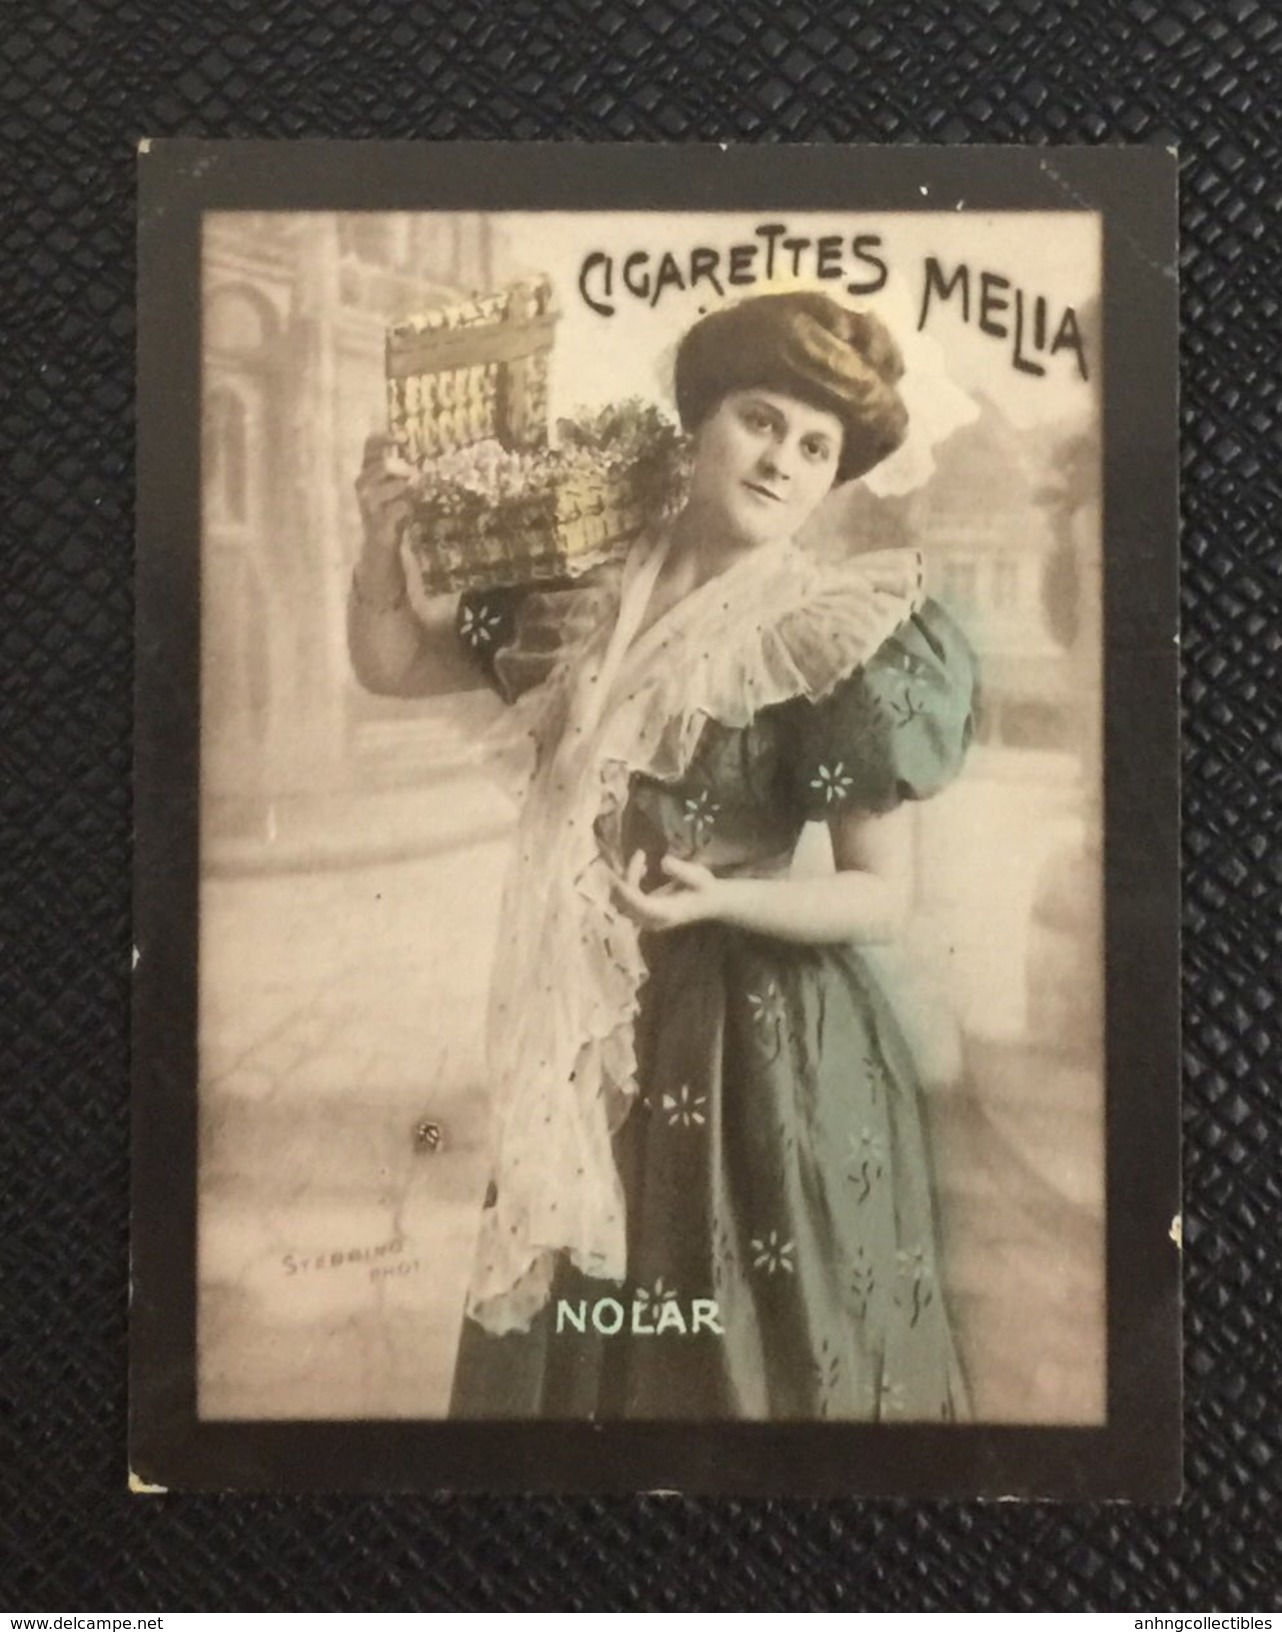 Indochine: Cigarettes, Tobacco, Vintage Advertising Label - Objetos Publicitarios